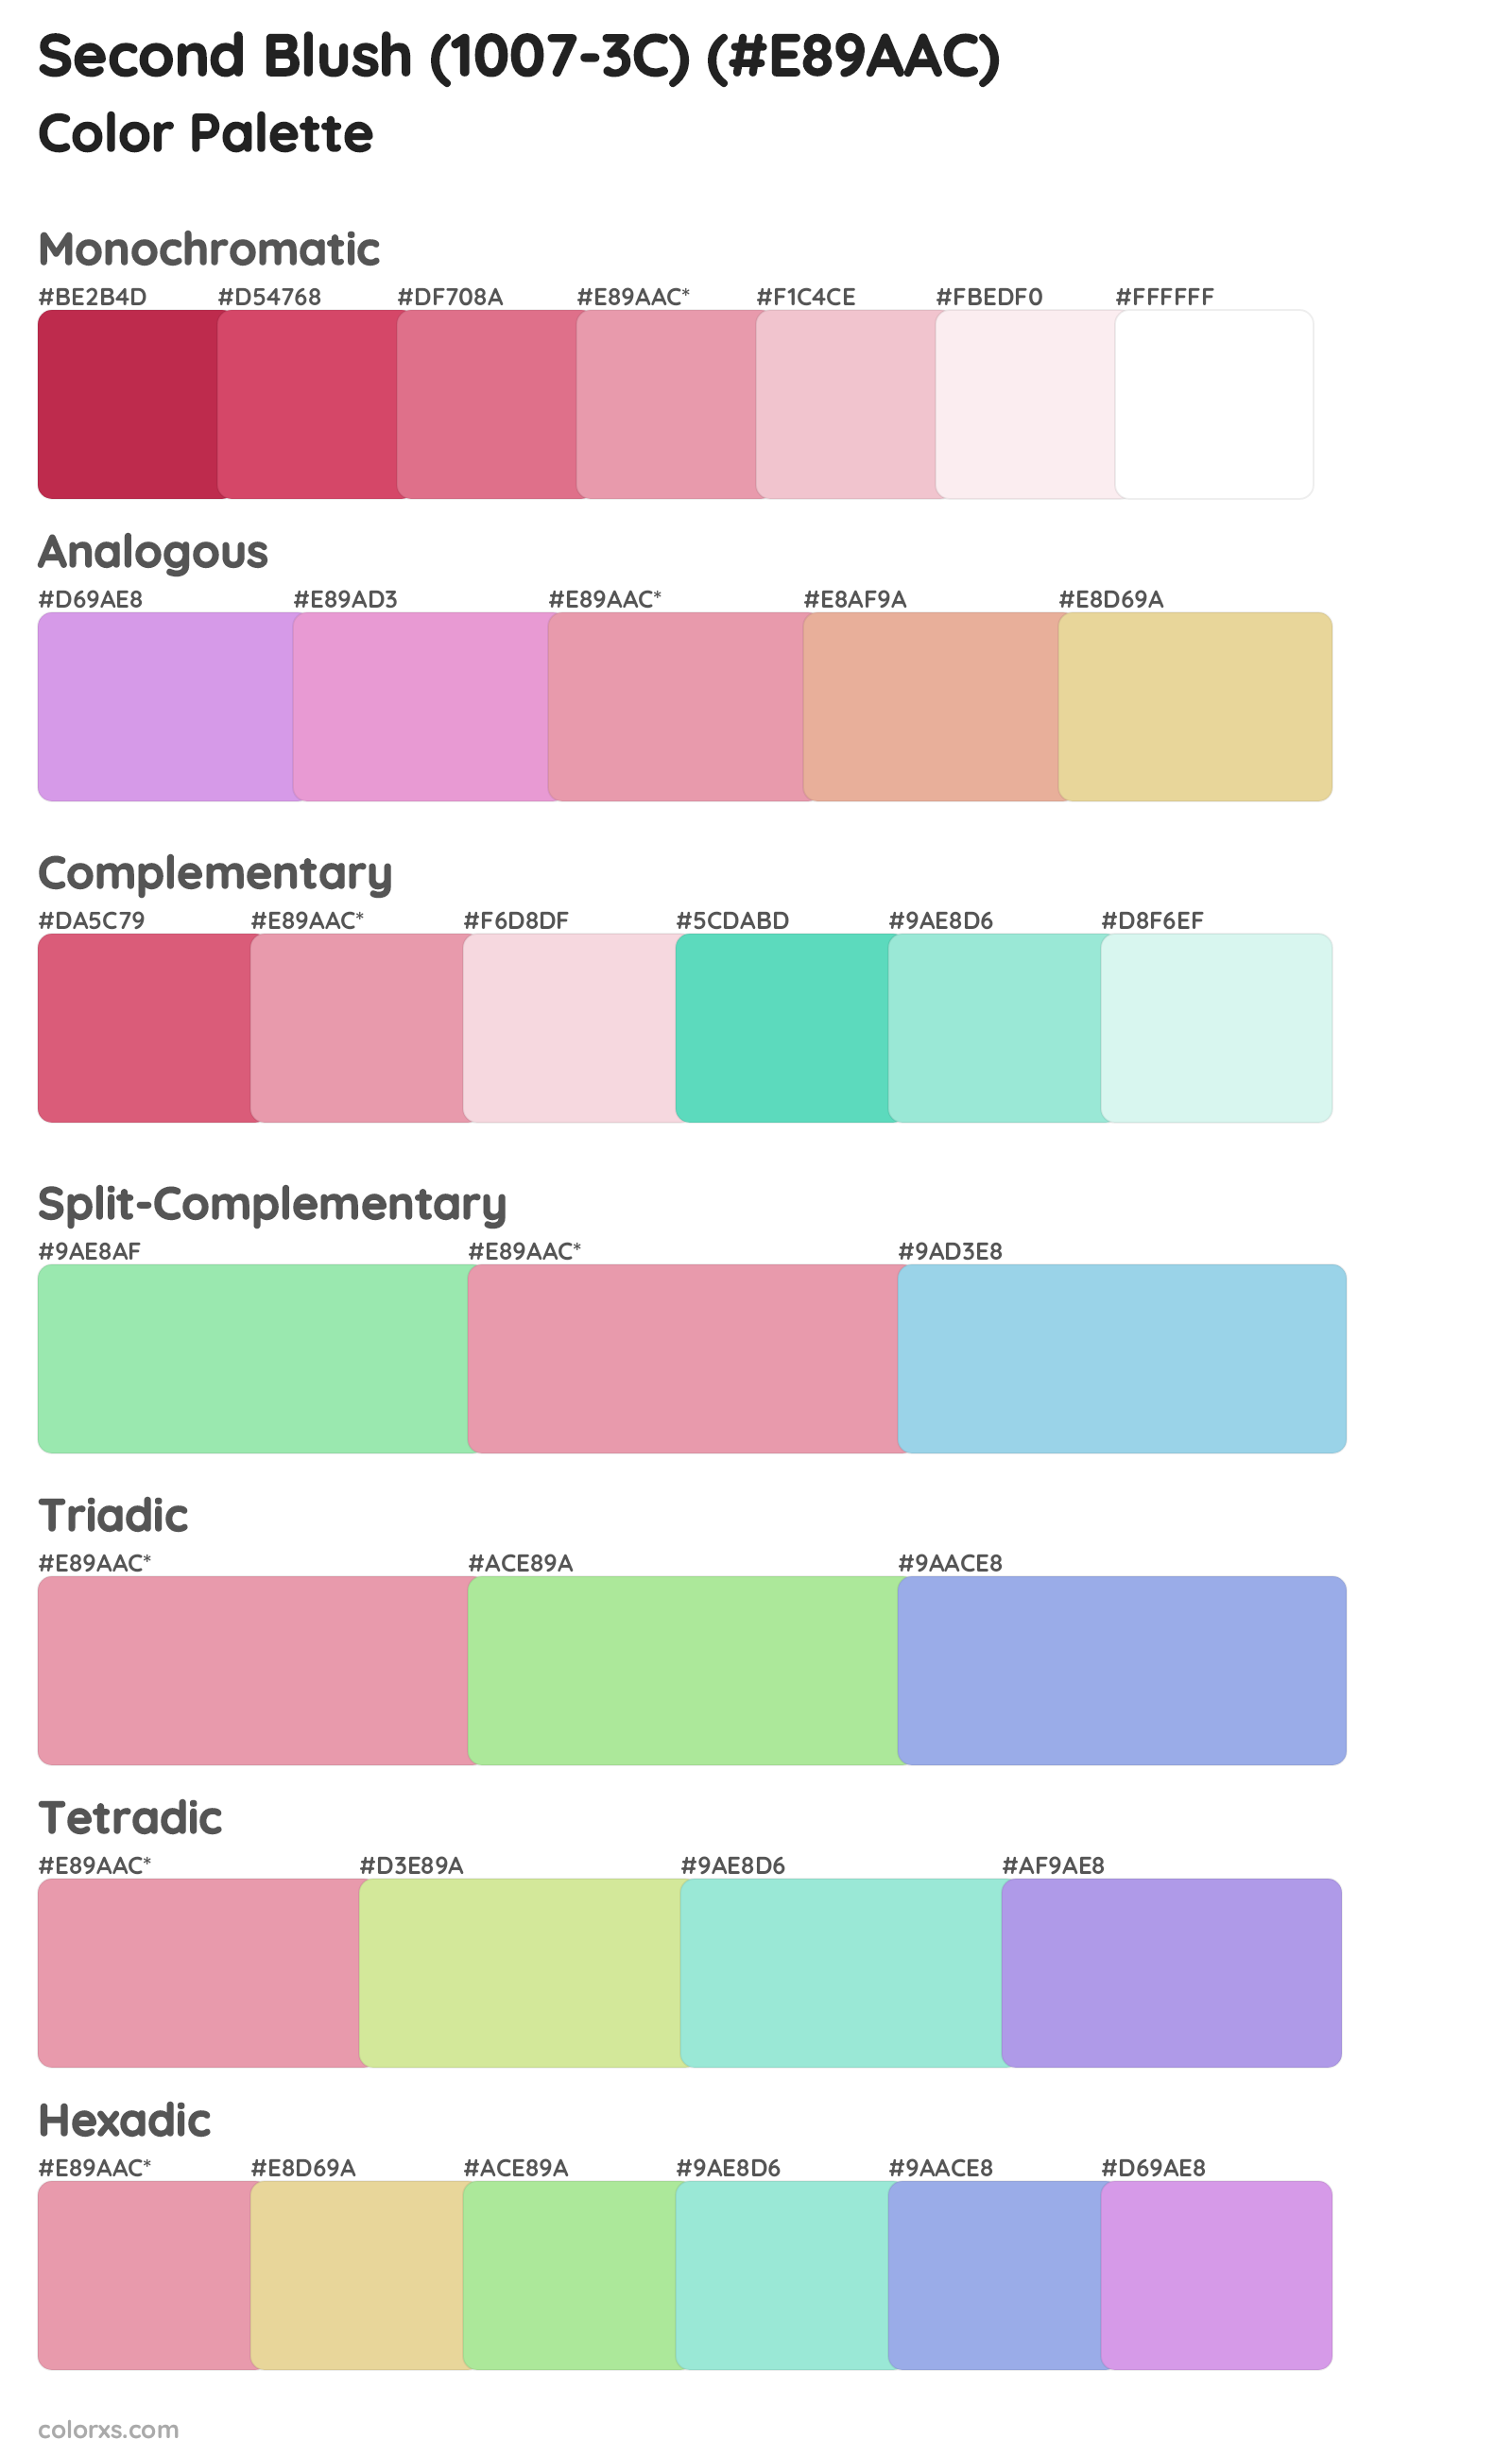 Second Blush (1007-3C) Color Scheme Palettes